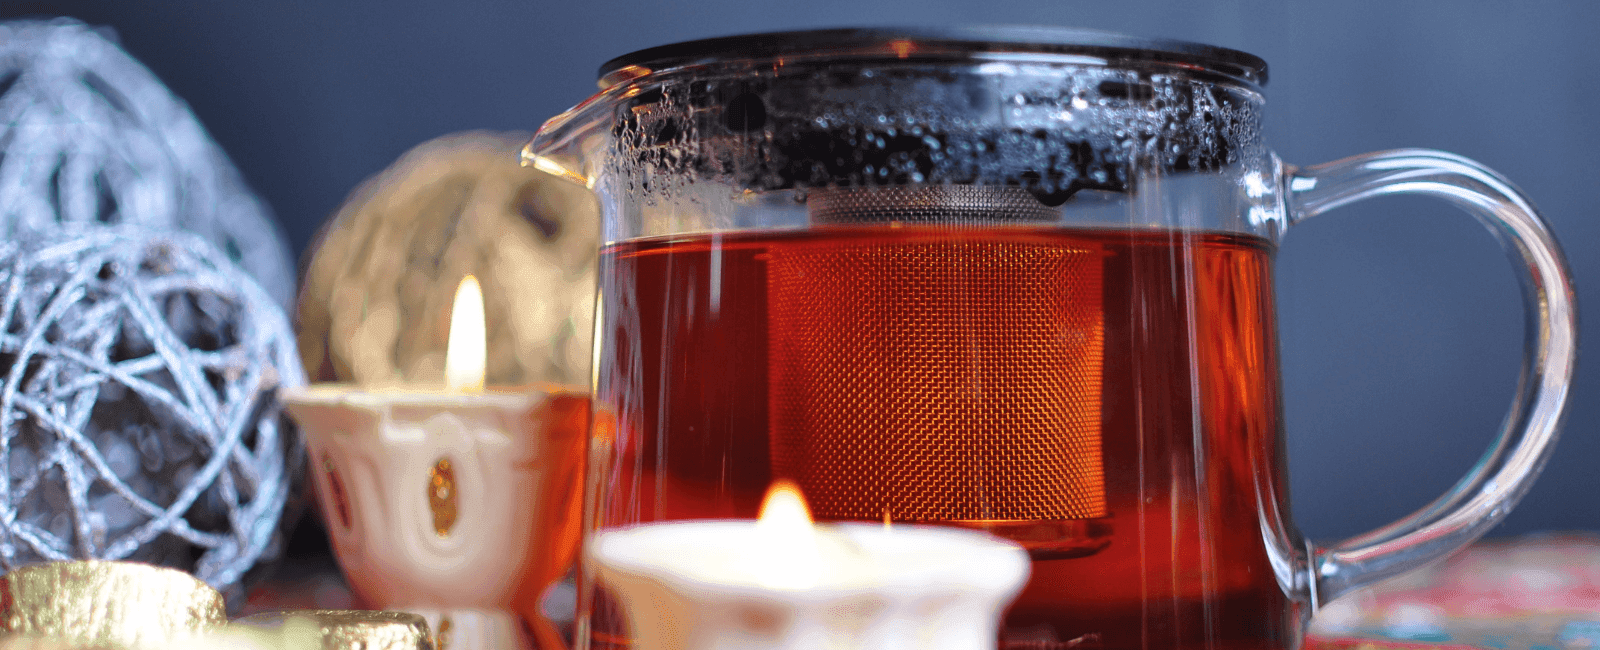 The Best Caffeine-Free Tea Varieties from Mushroom to Herbal